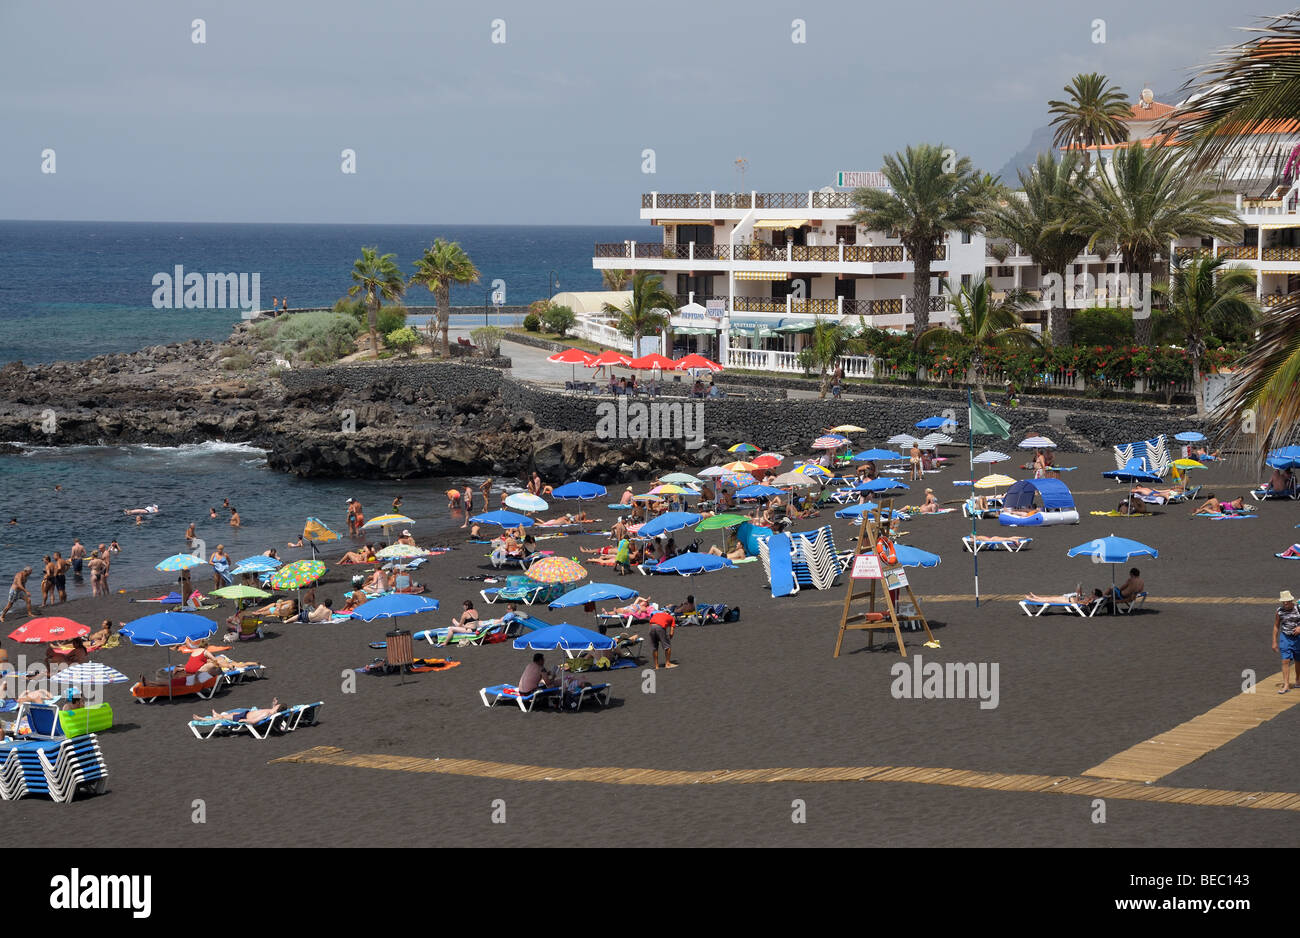 Playa de la Arena, île des Canaries Tenerife, Espagne Banque D'Images